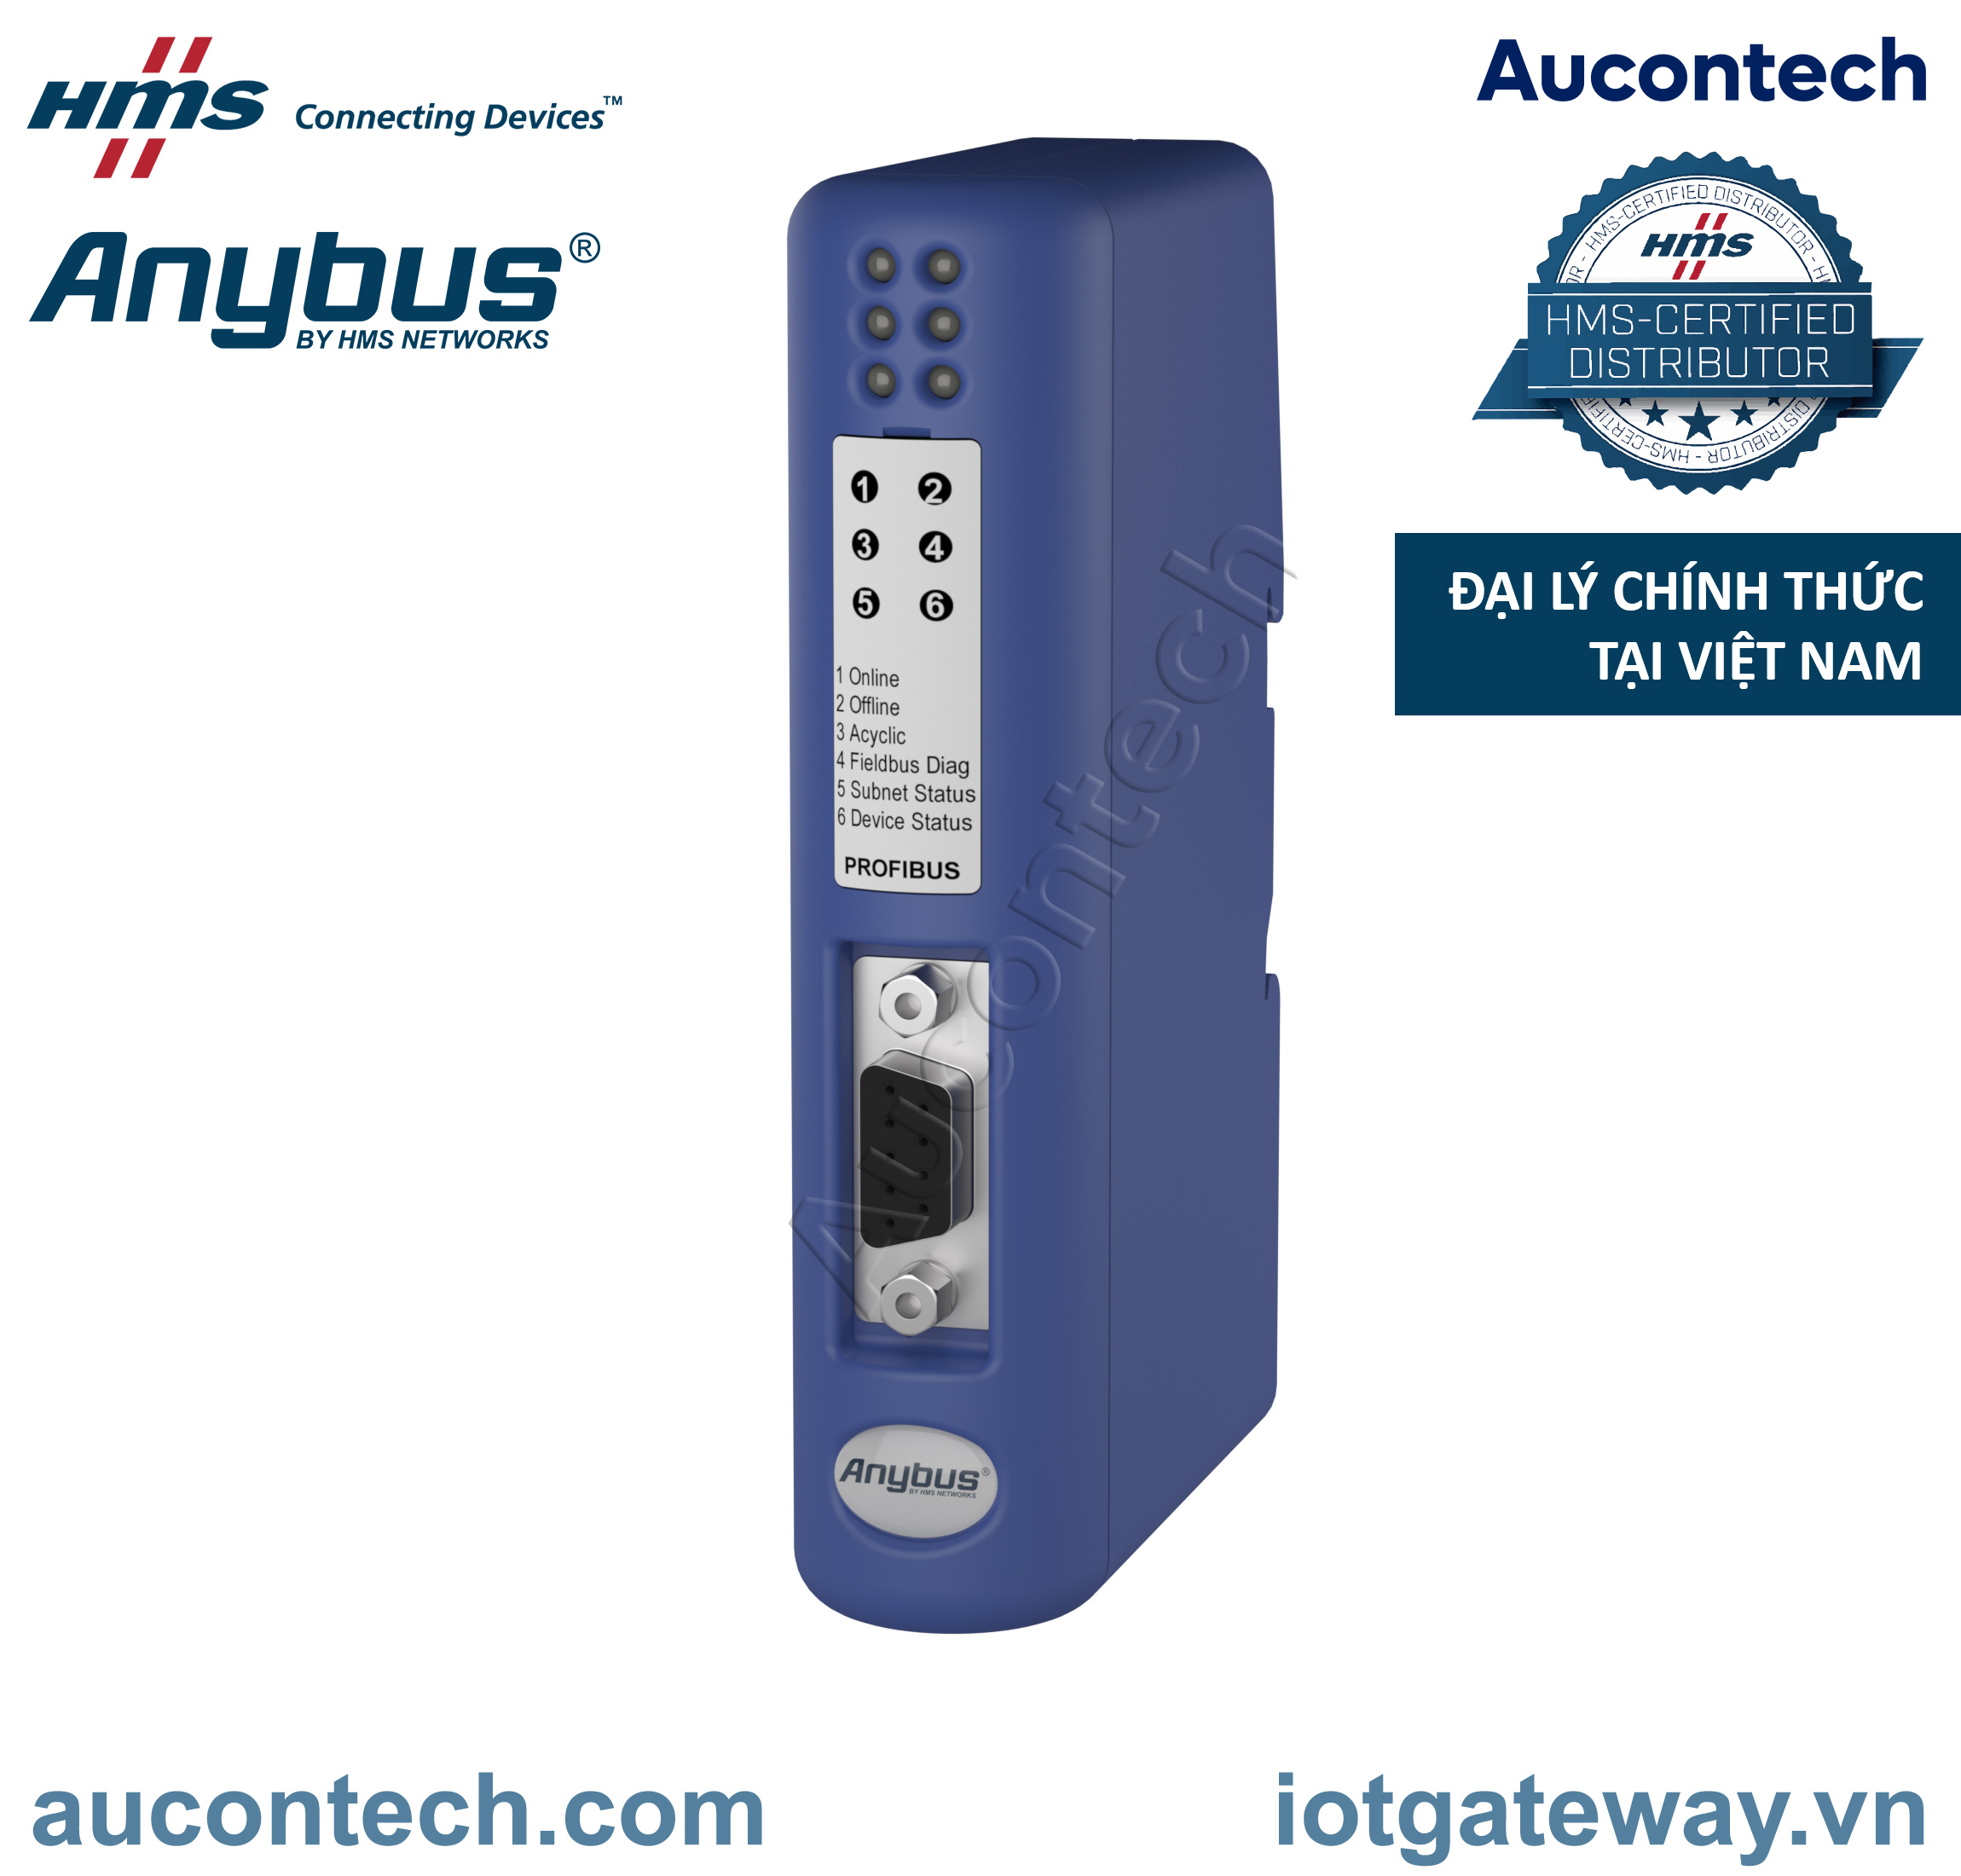 Anybus Communicator Serial - Profibus - AB7000-B - Vietnam Aucontech